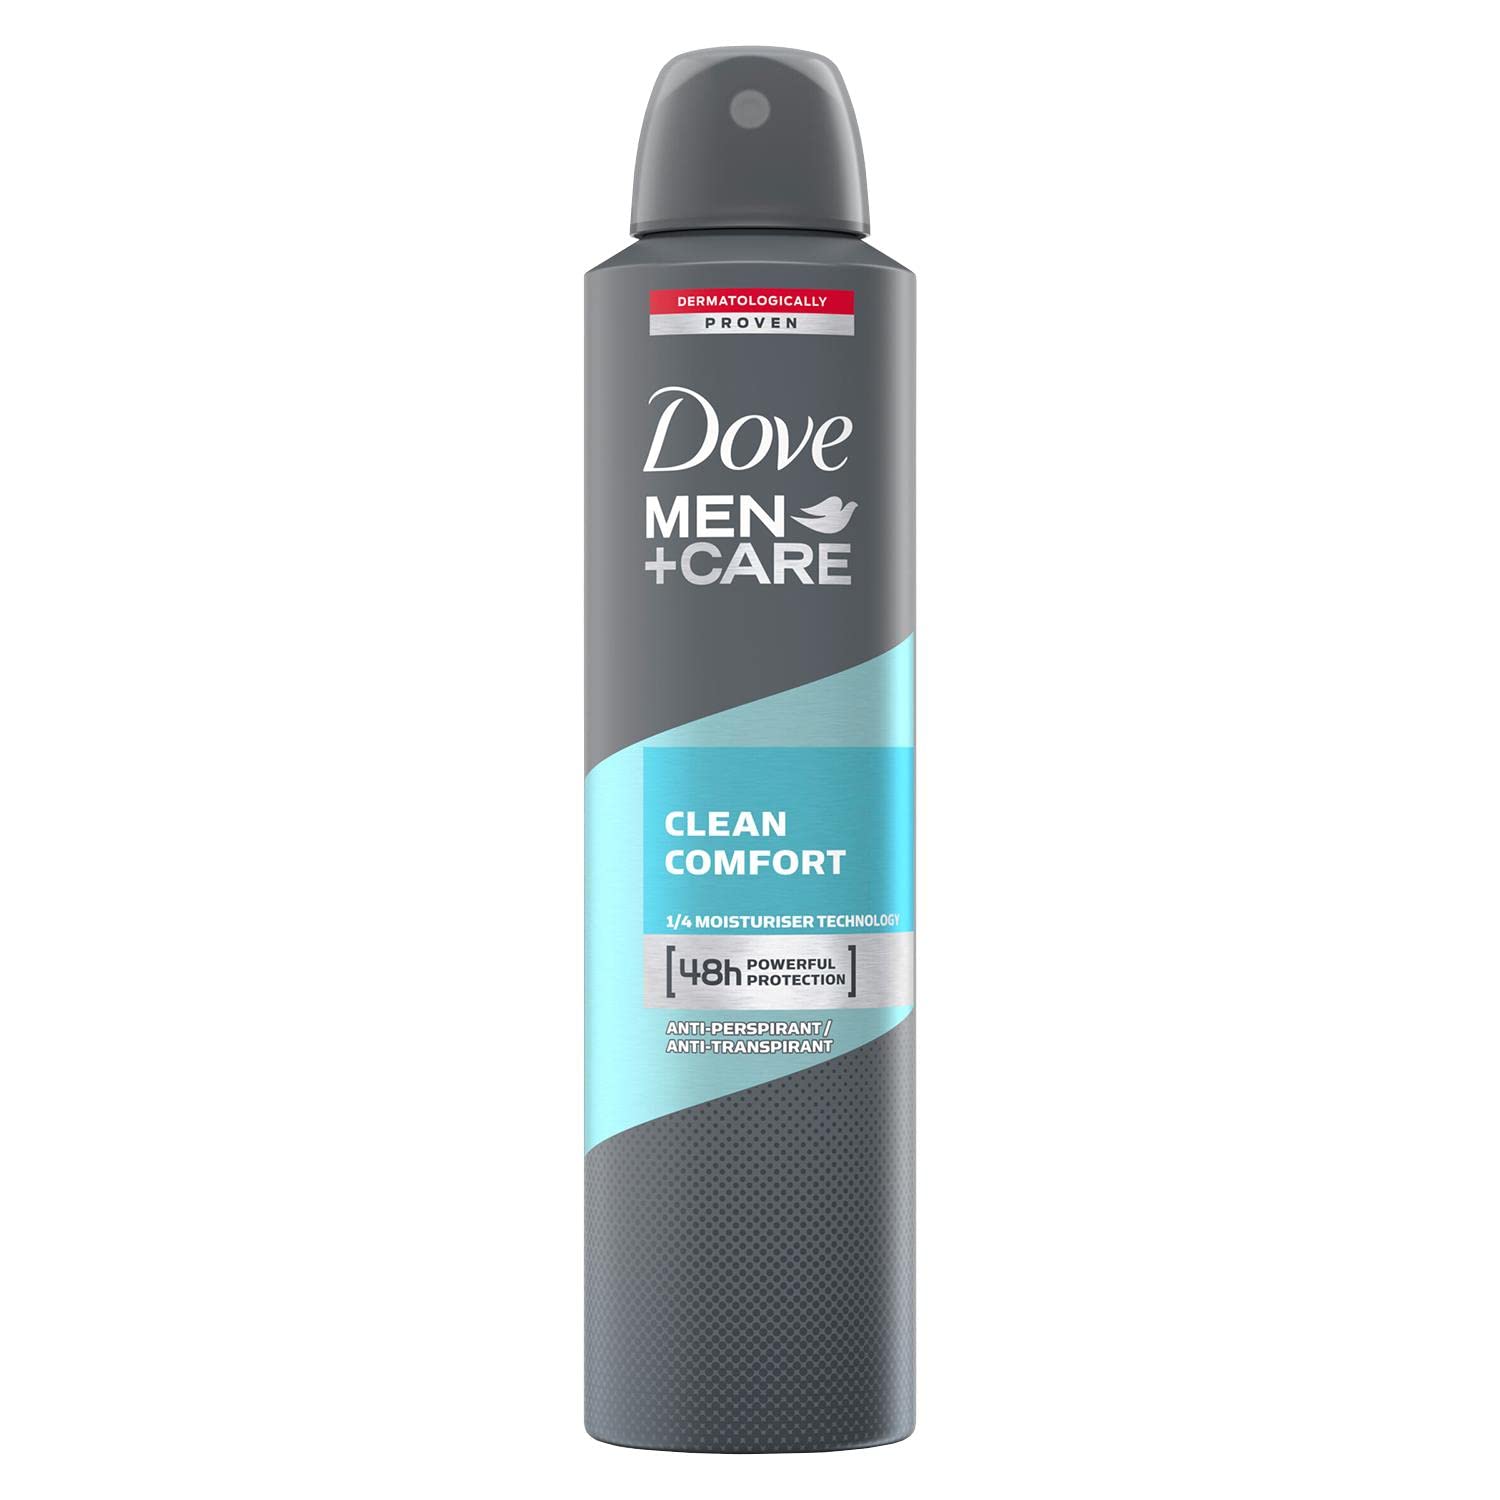 Men Care Clean Comfort Deodorant Spray